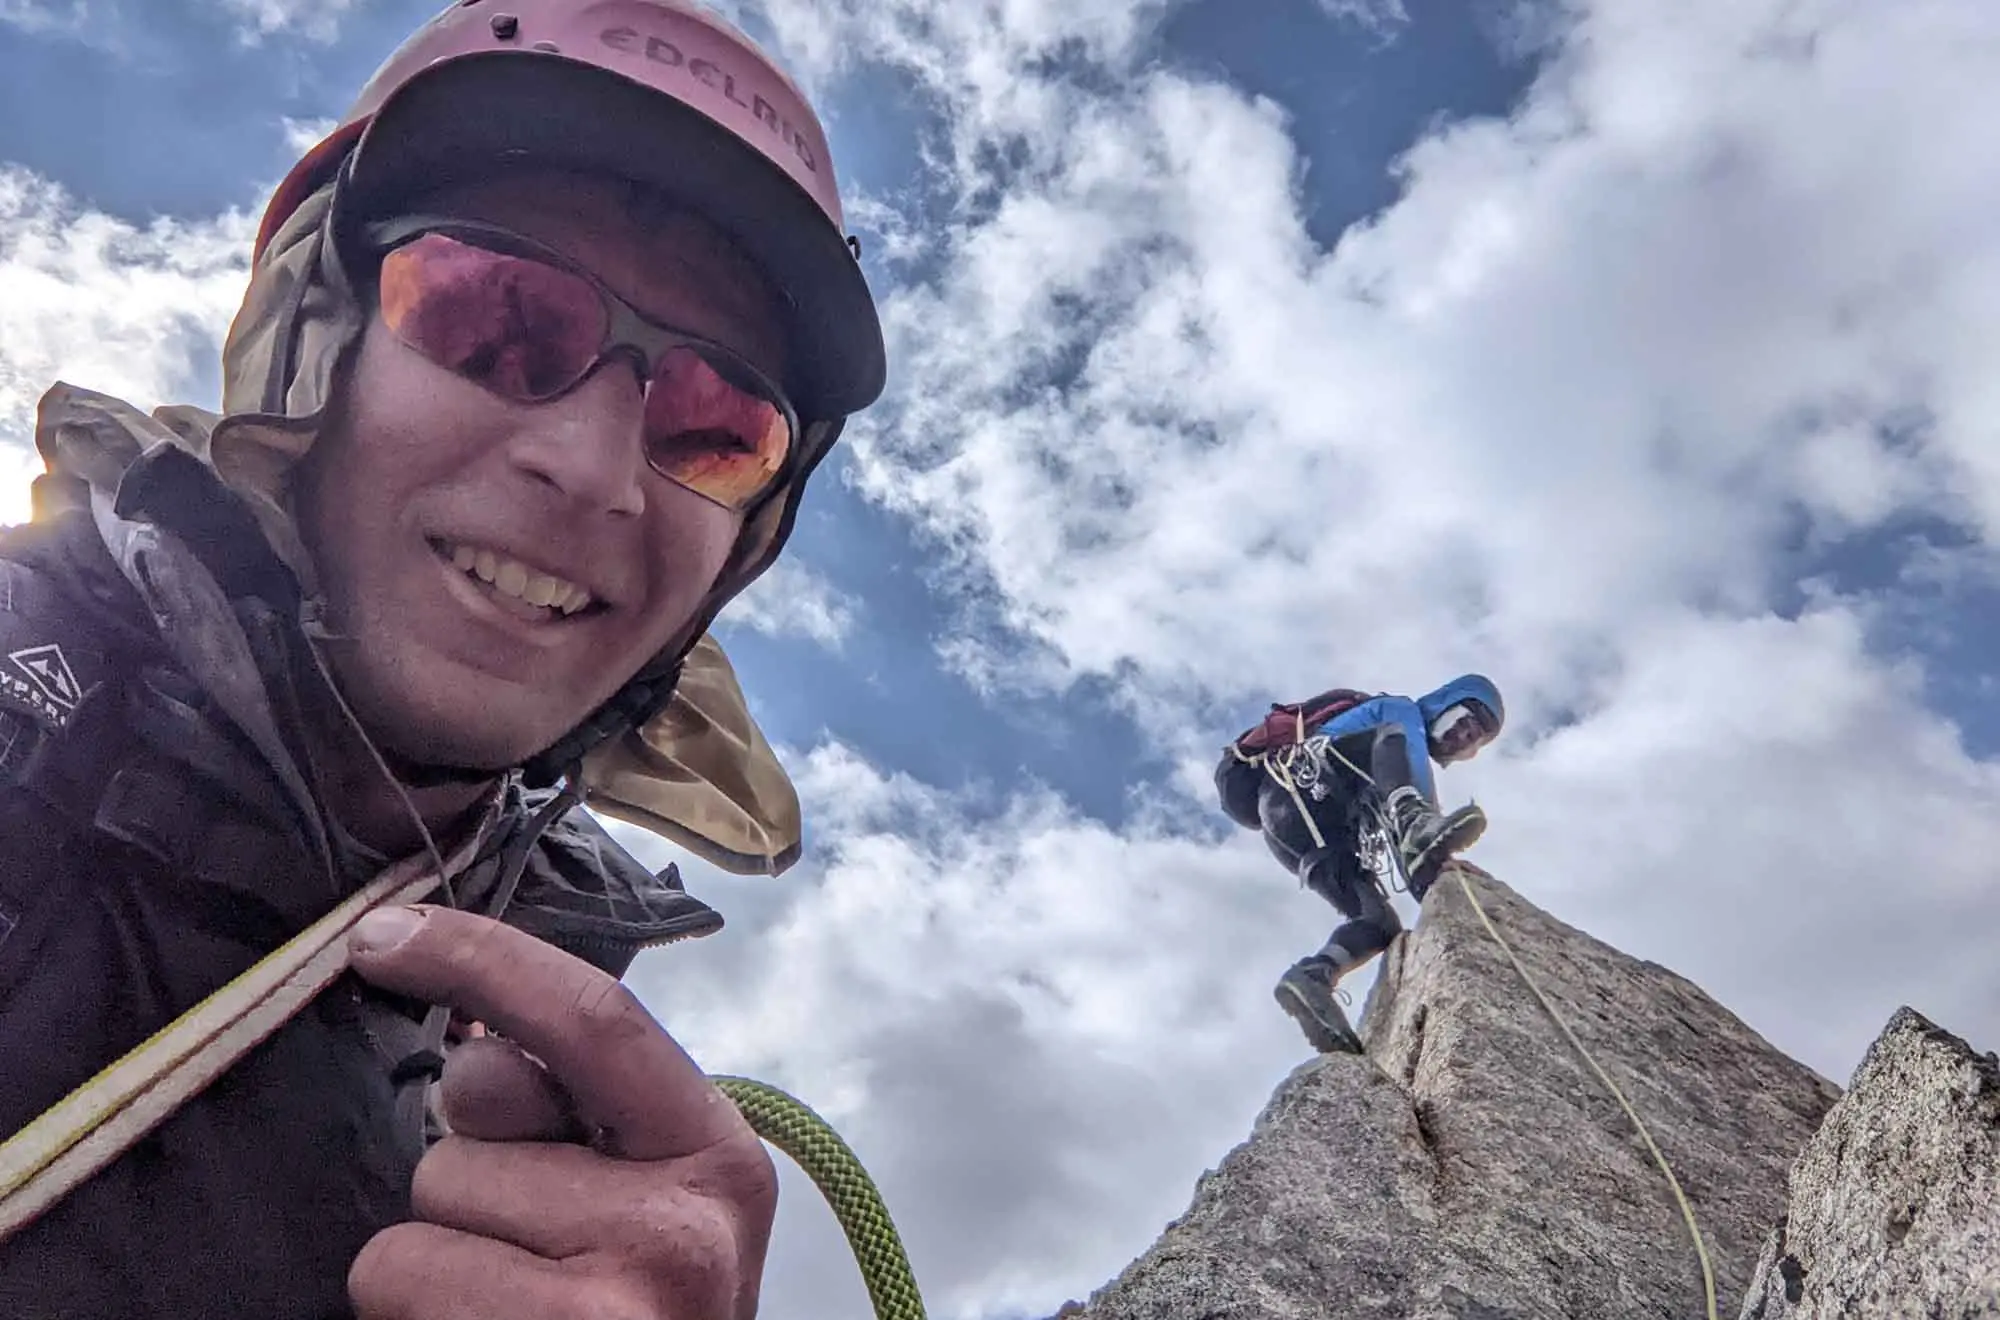 Ерік Гілбертсон (Eric Gilbertson) та Андреас Фрайденсберг (Andreas Frydensberg) на вершині Альпоміш (Alpomish Peak) - найвищій горі Узбекистану. Фото  Eric Gilbertson